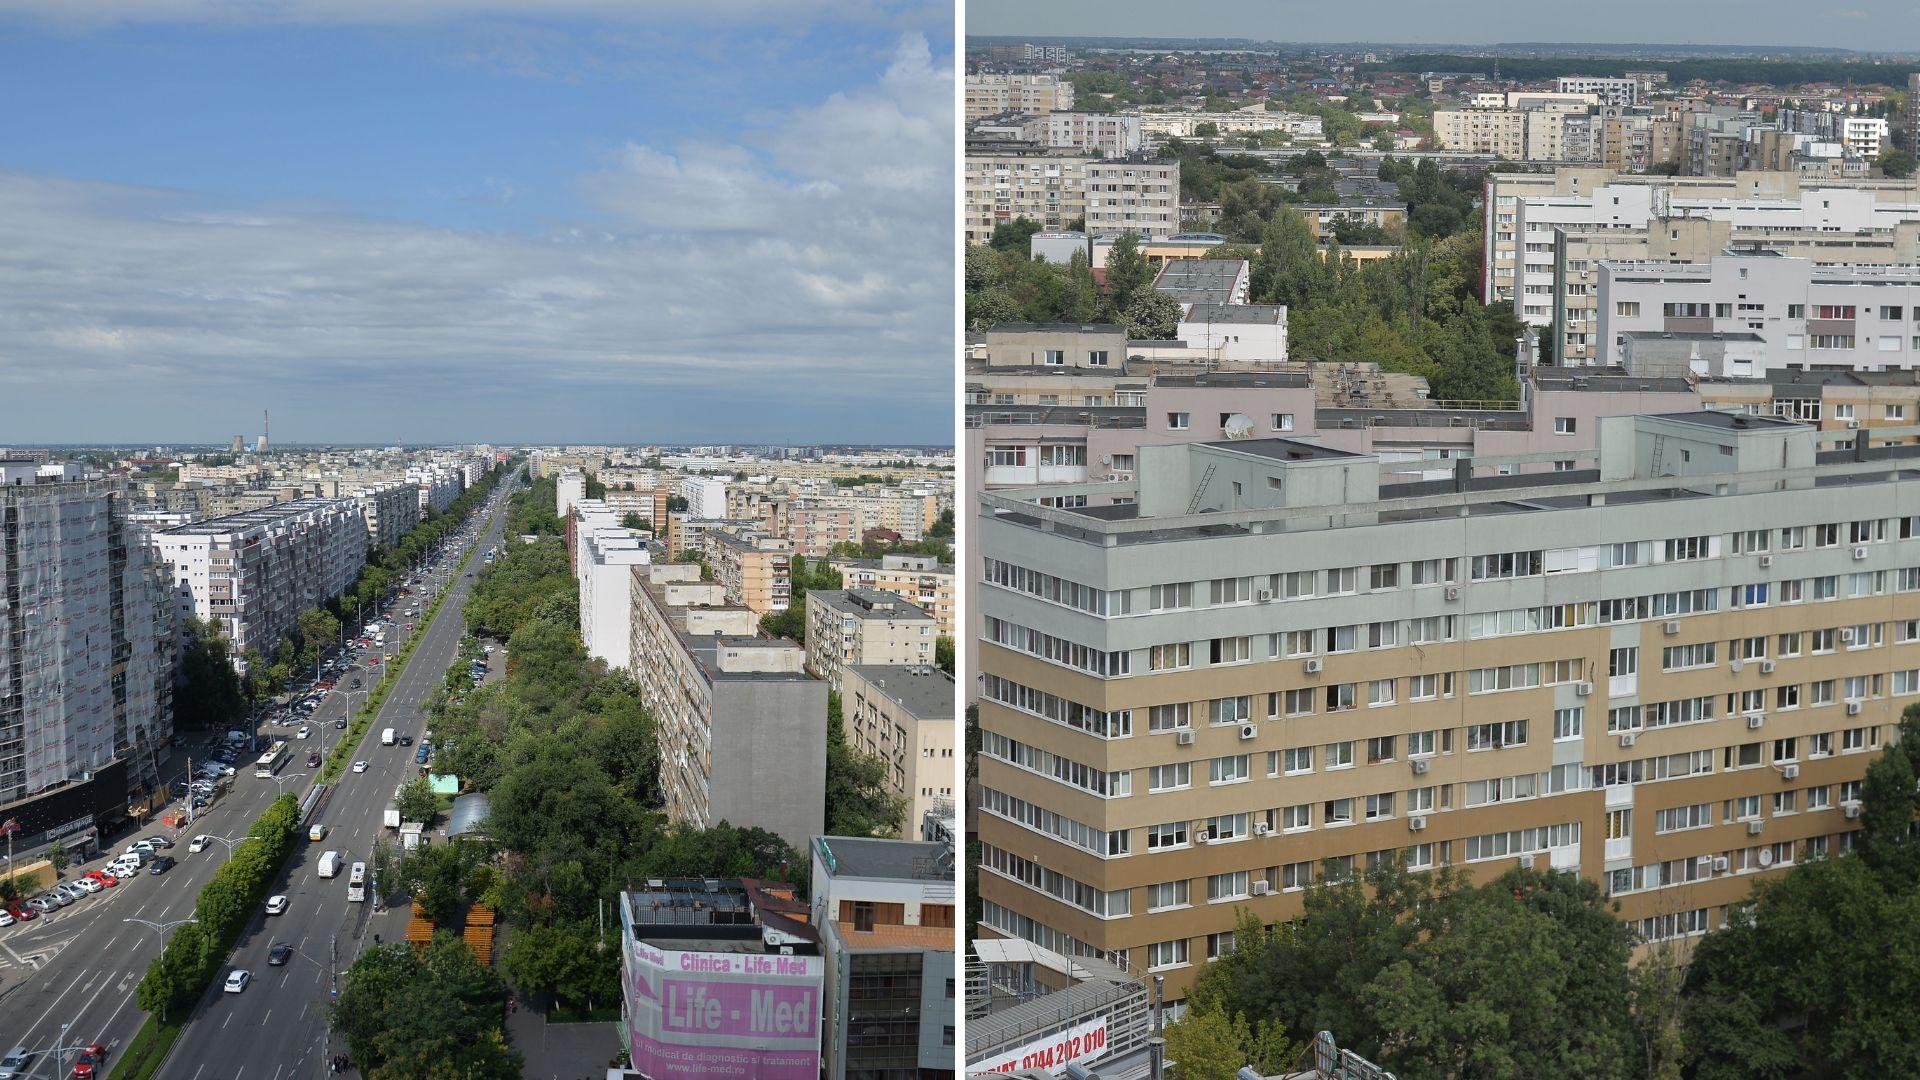 Cât costă astăzi un apartament vechi cu trei camere, în București. Cei care vor să își cumpere o locuință au de câștigat